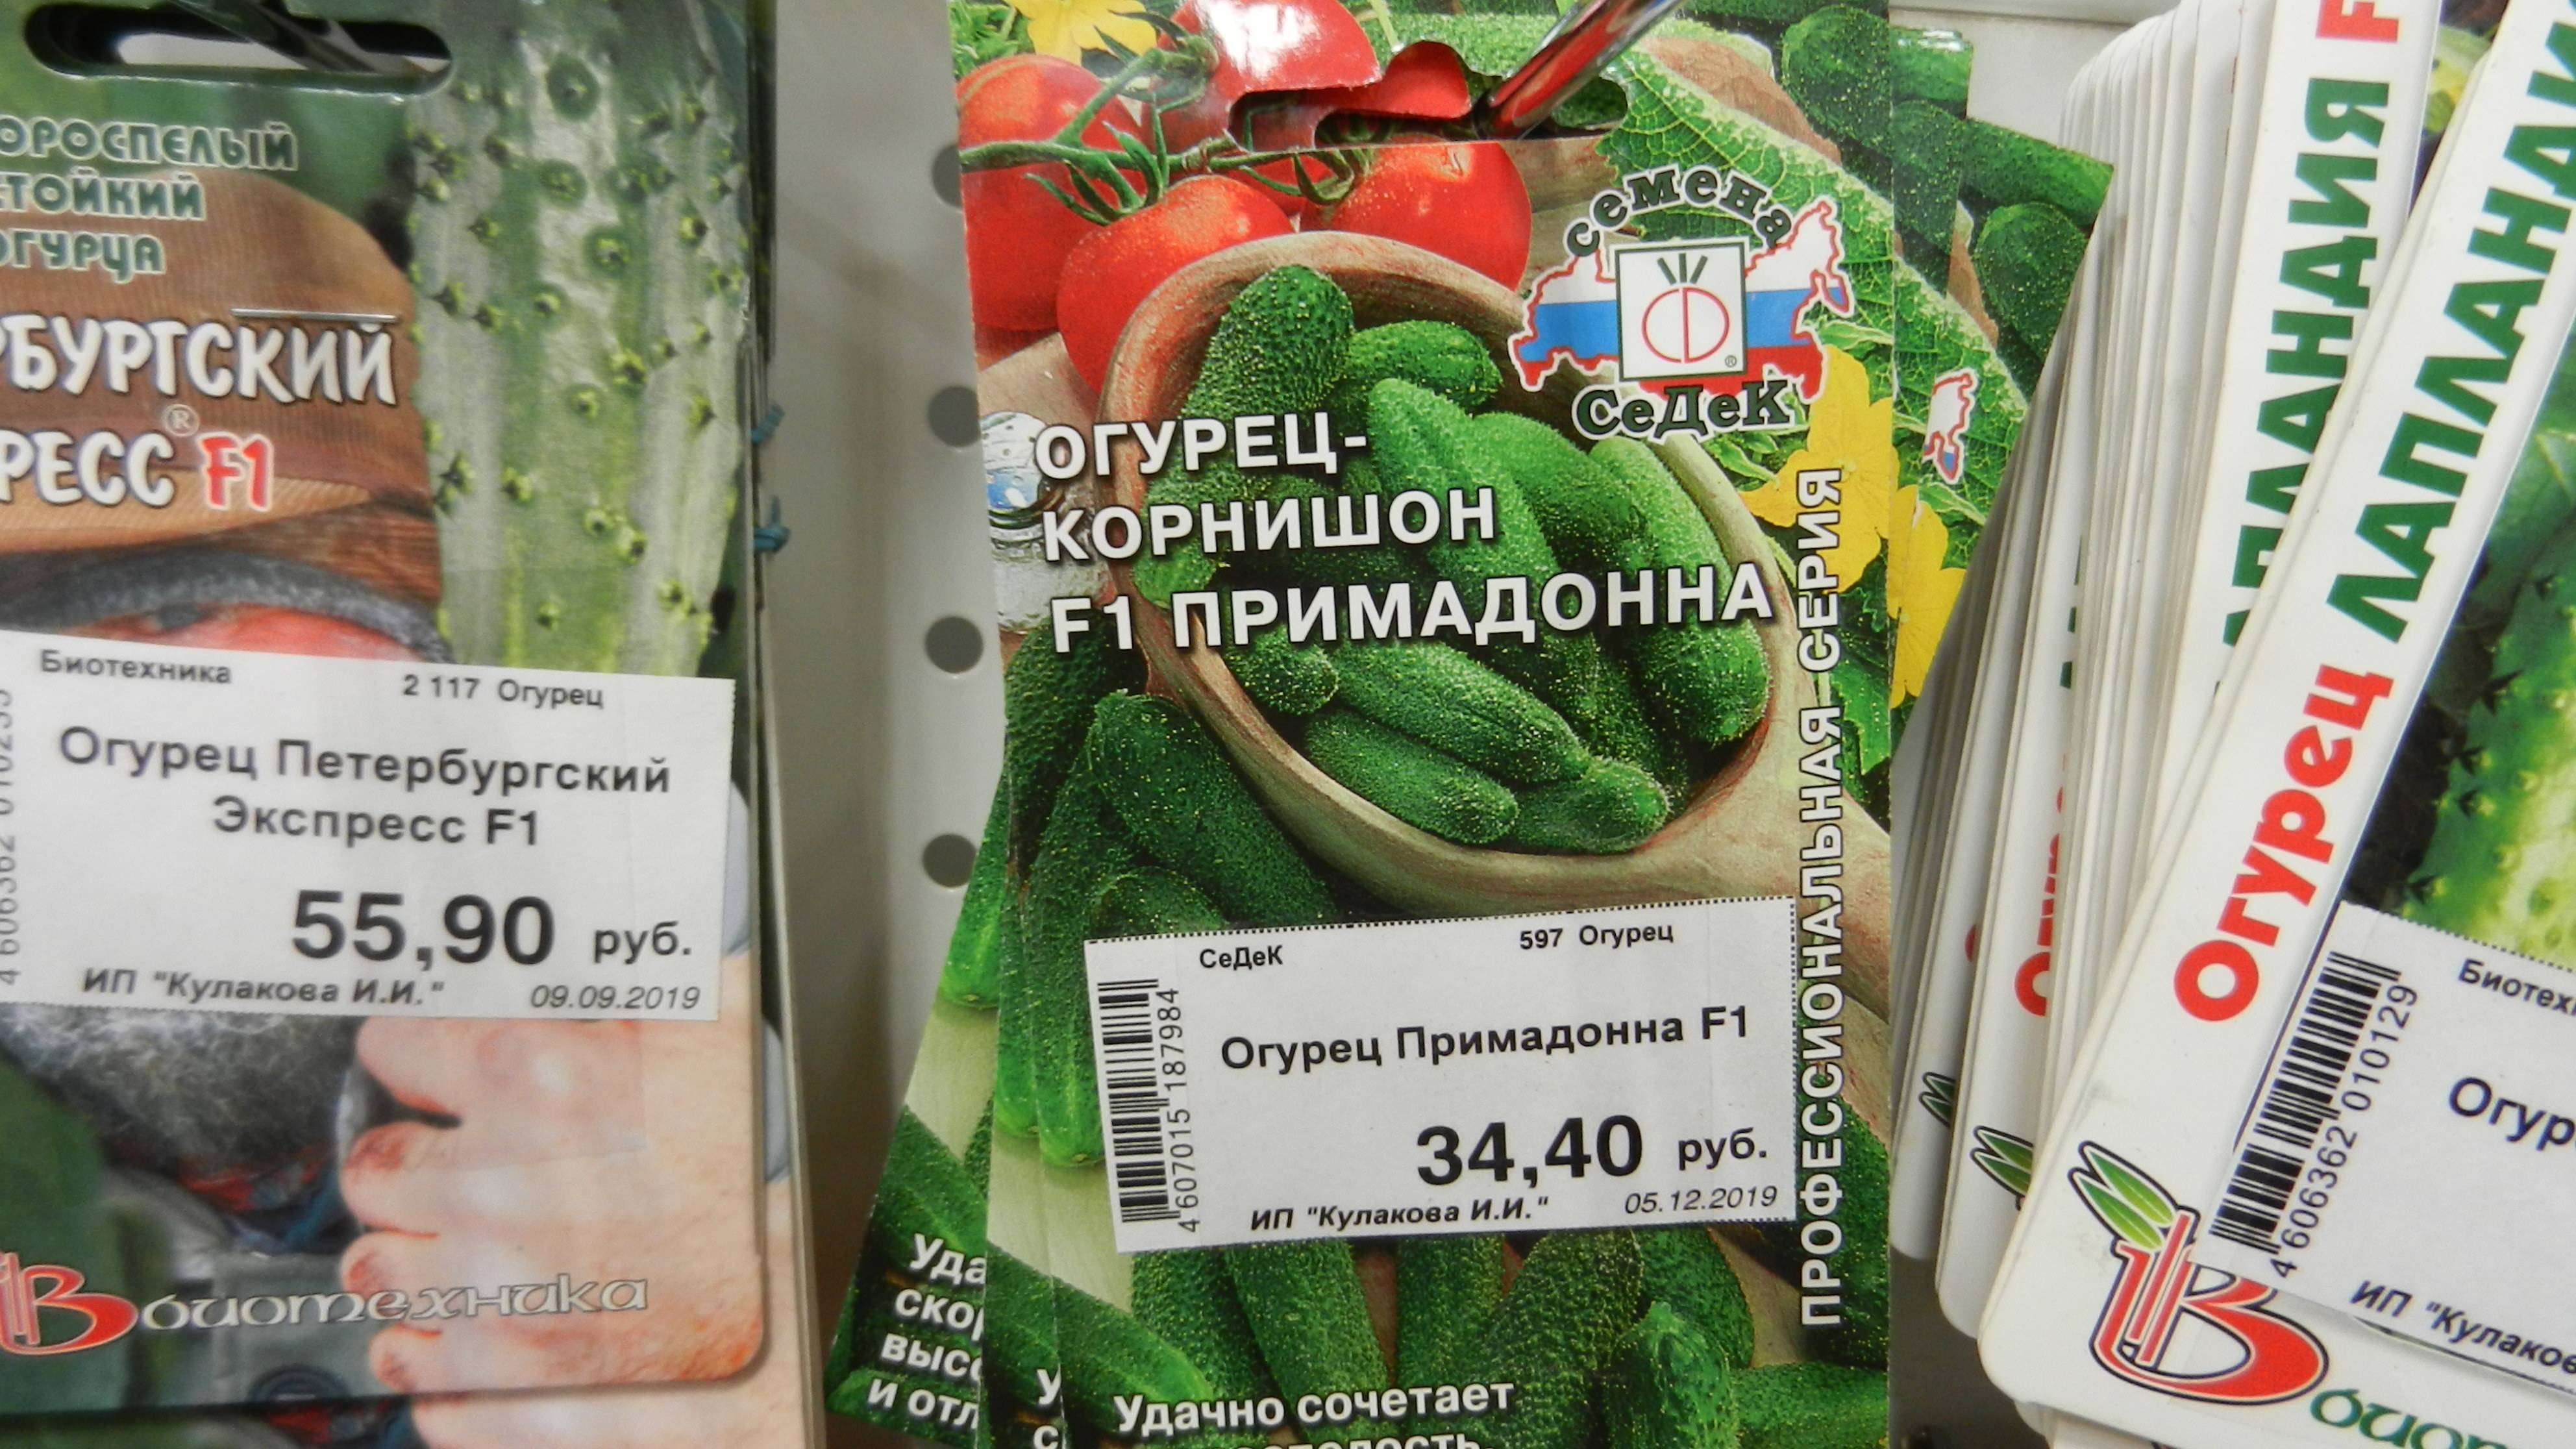 Гибрид огурцов «сибирский букет f1»: фото, видео, описание, посадка, характеристика, урожайность, отзывы